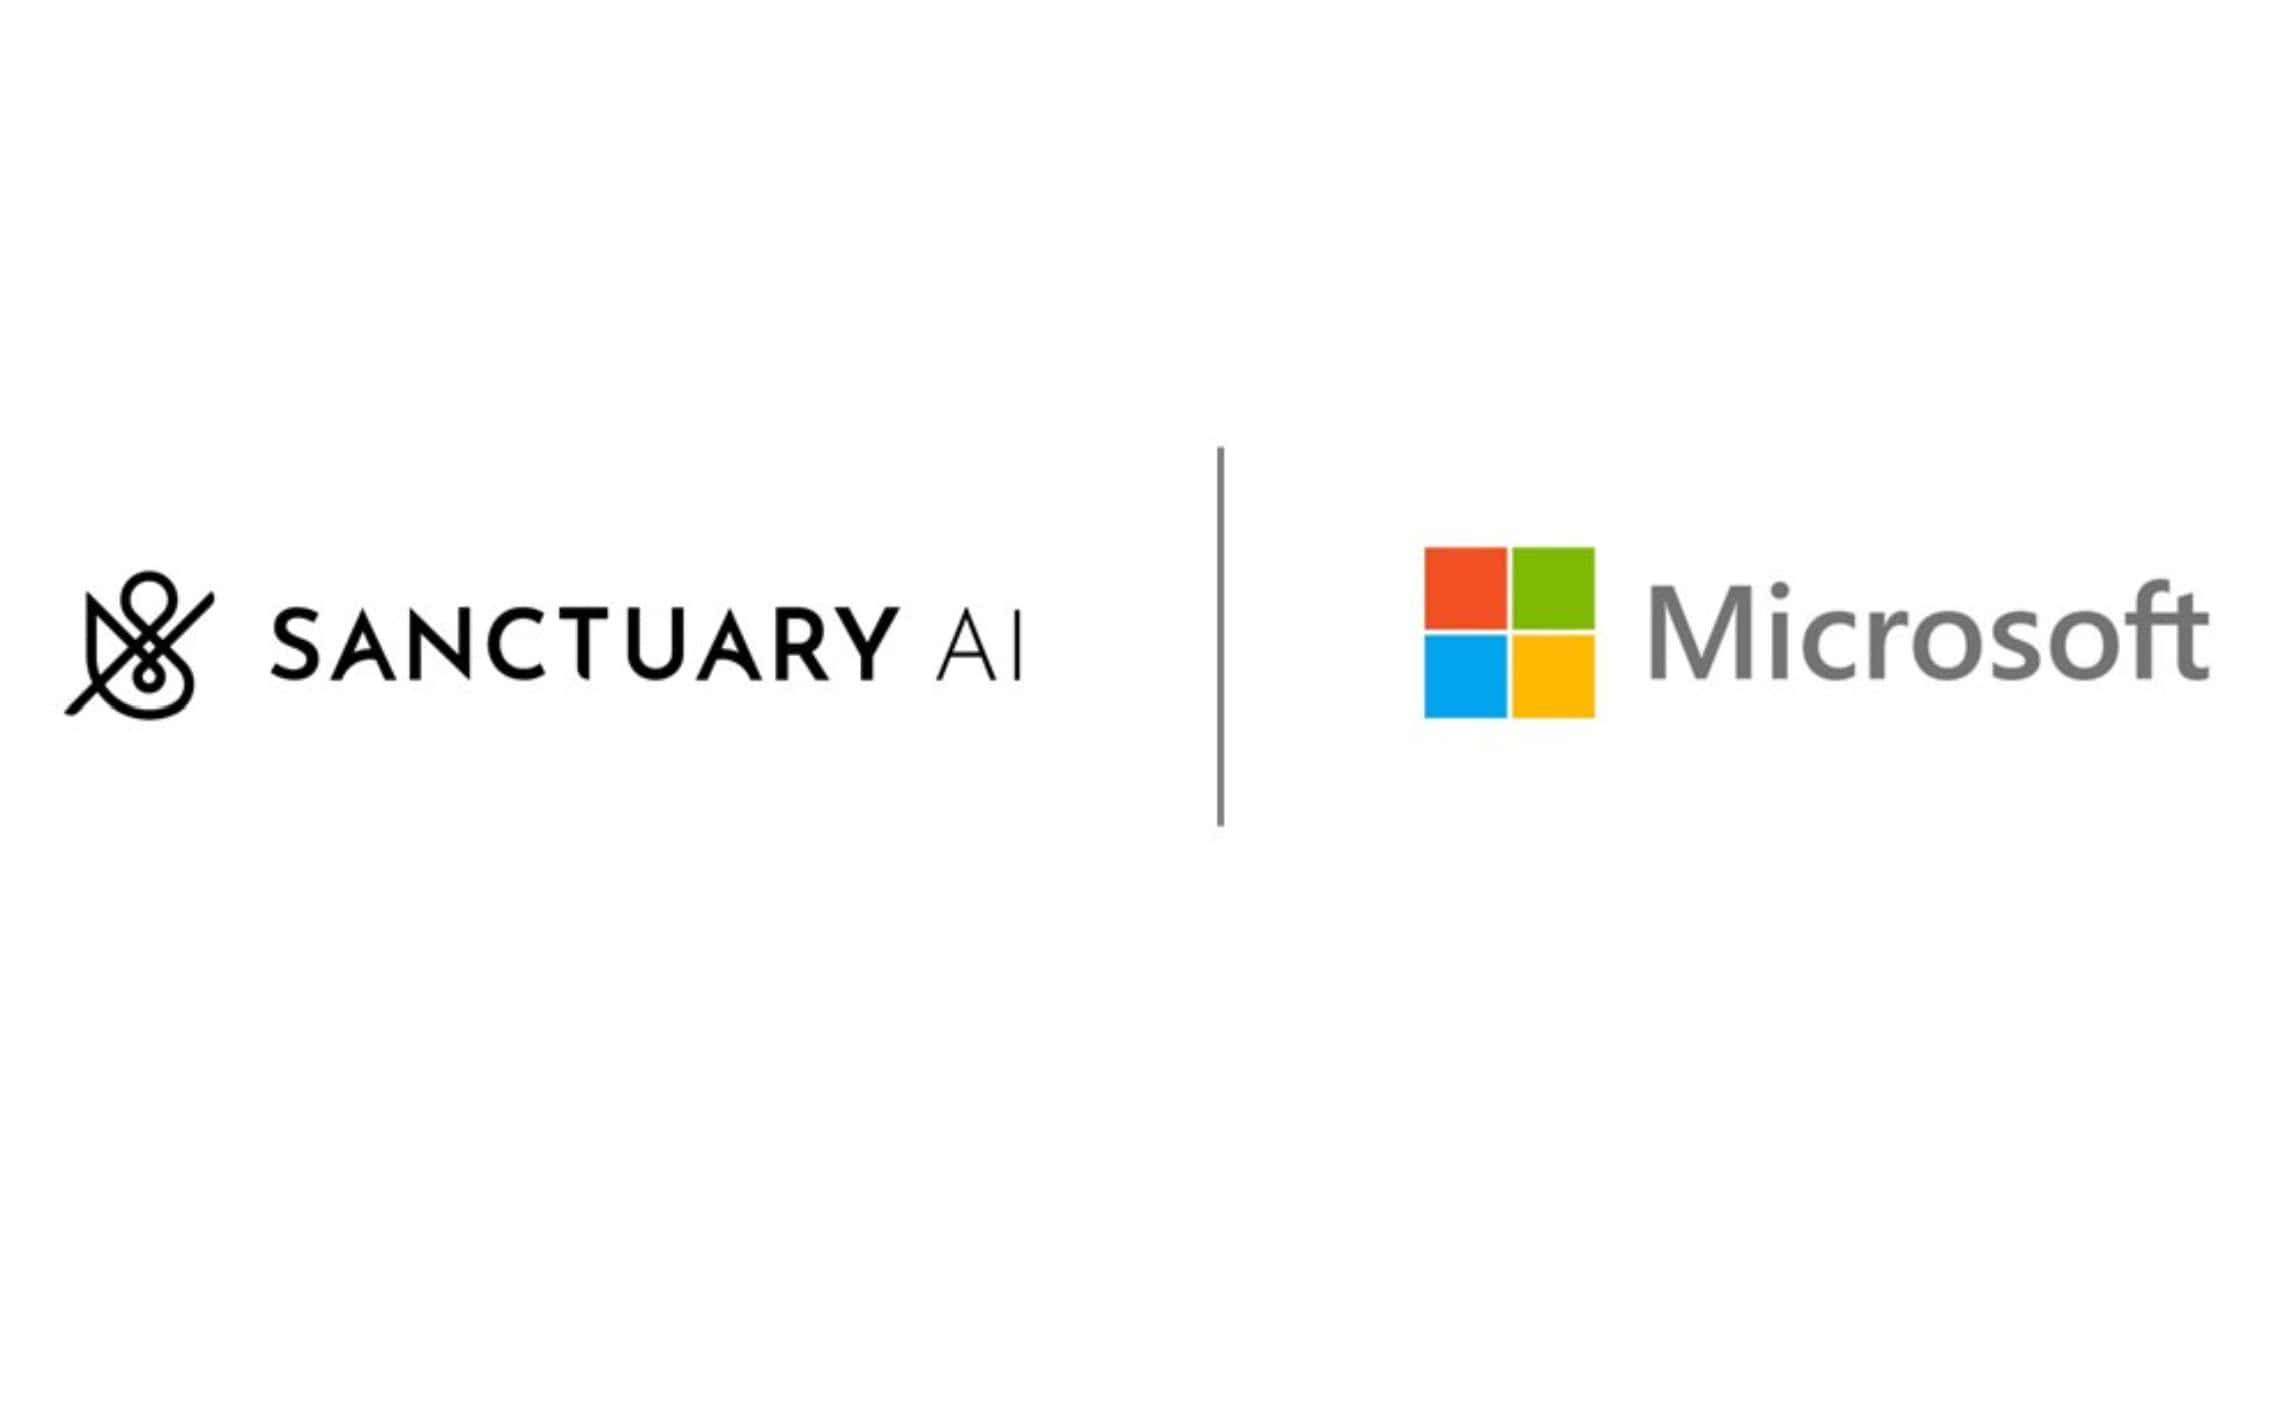 Microsoft Sanctuary KI